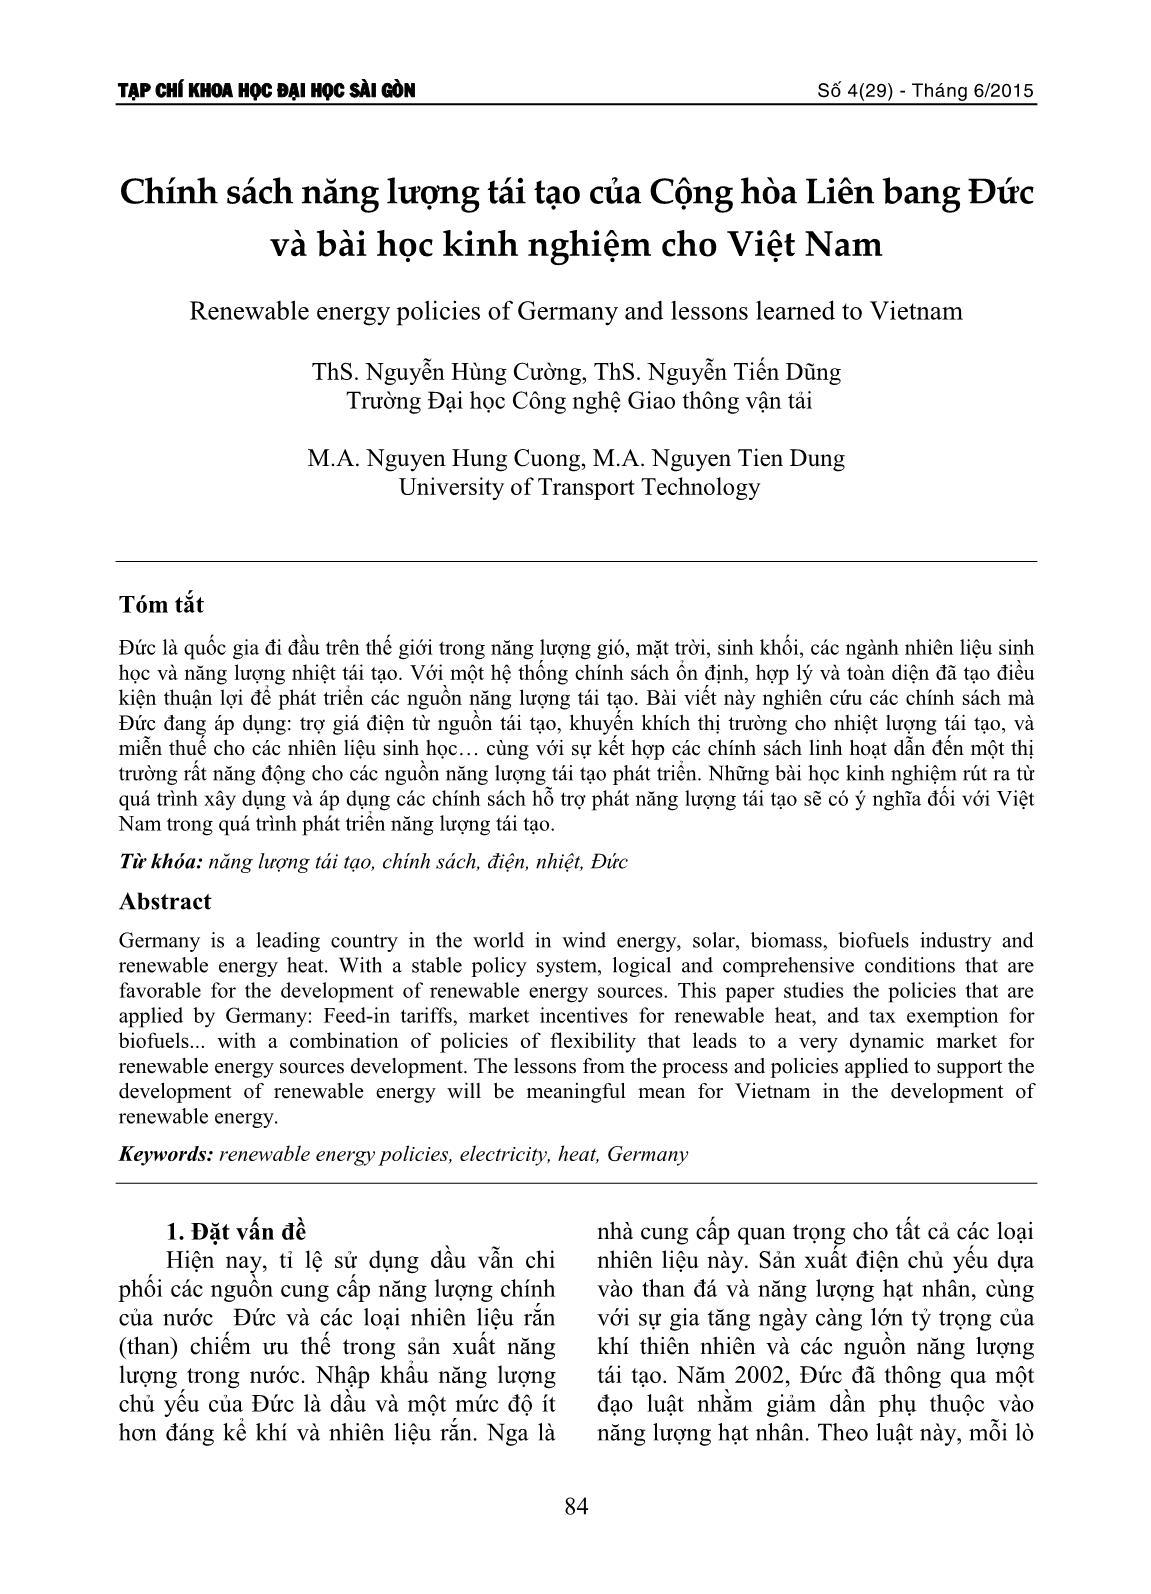 Chính sách năng lượng tái tạo của Cộng hòa Liên bang Đức và bài học kinh nghiệm cho Việt Nam trang 1